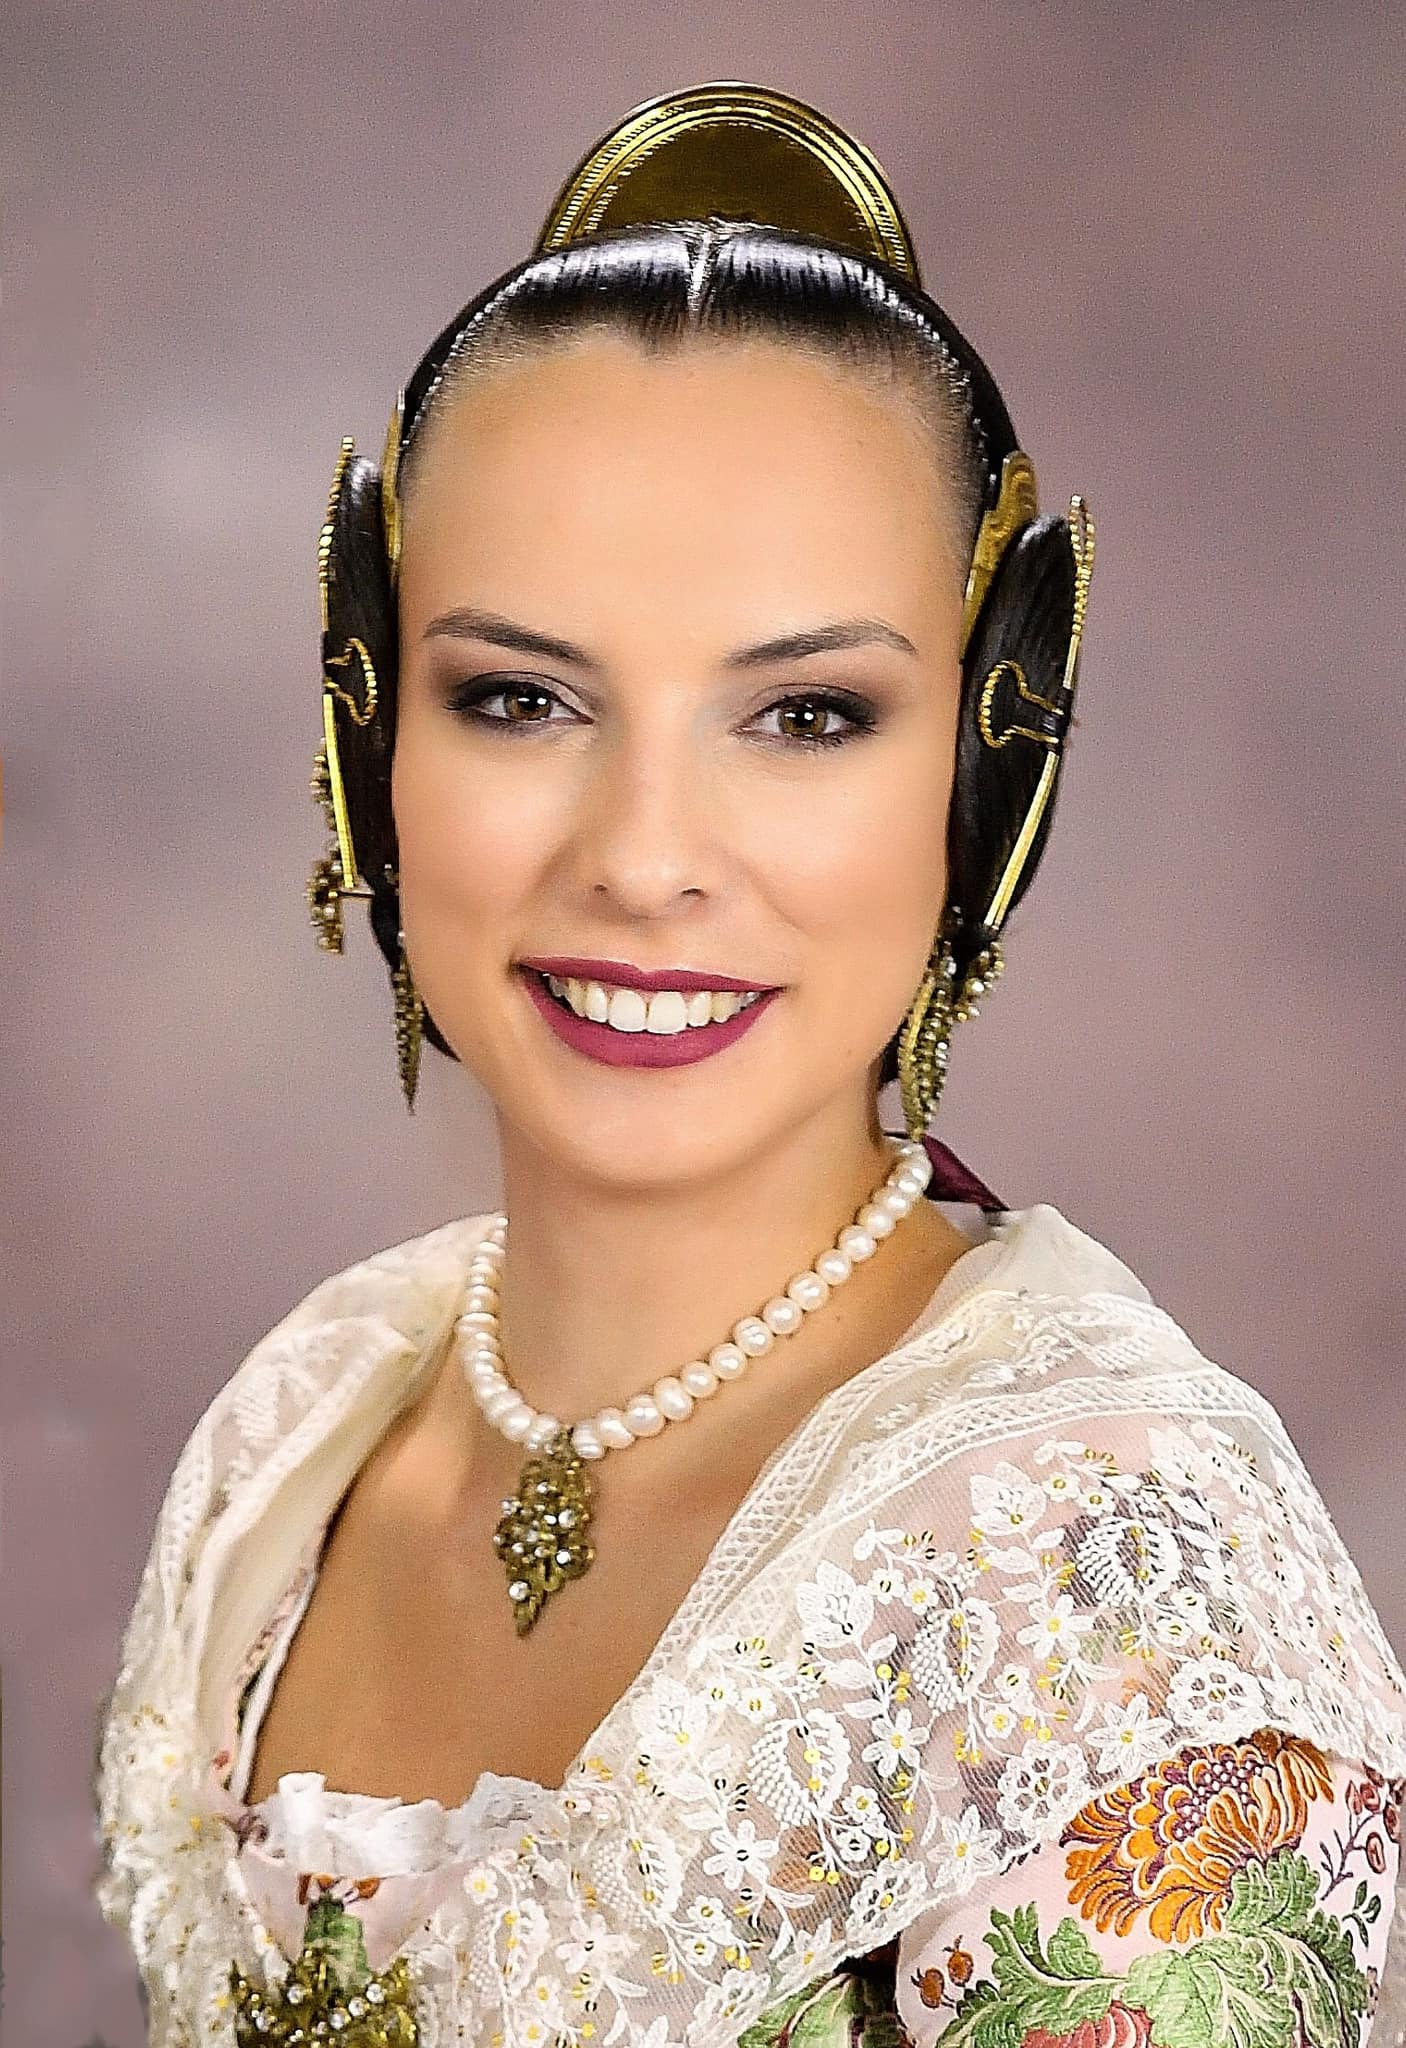 María Burillo Cabrera